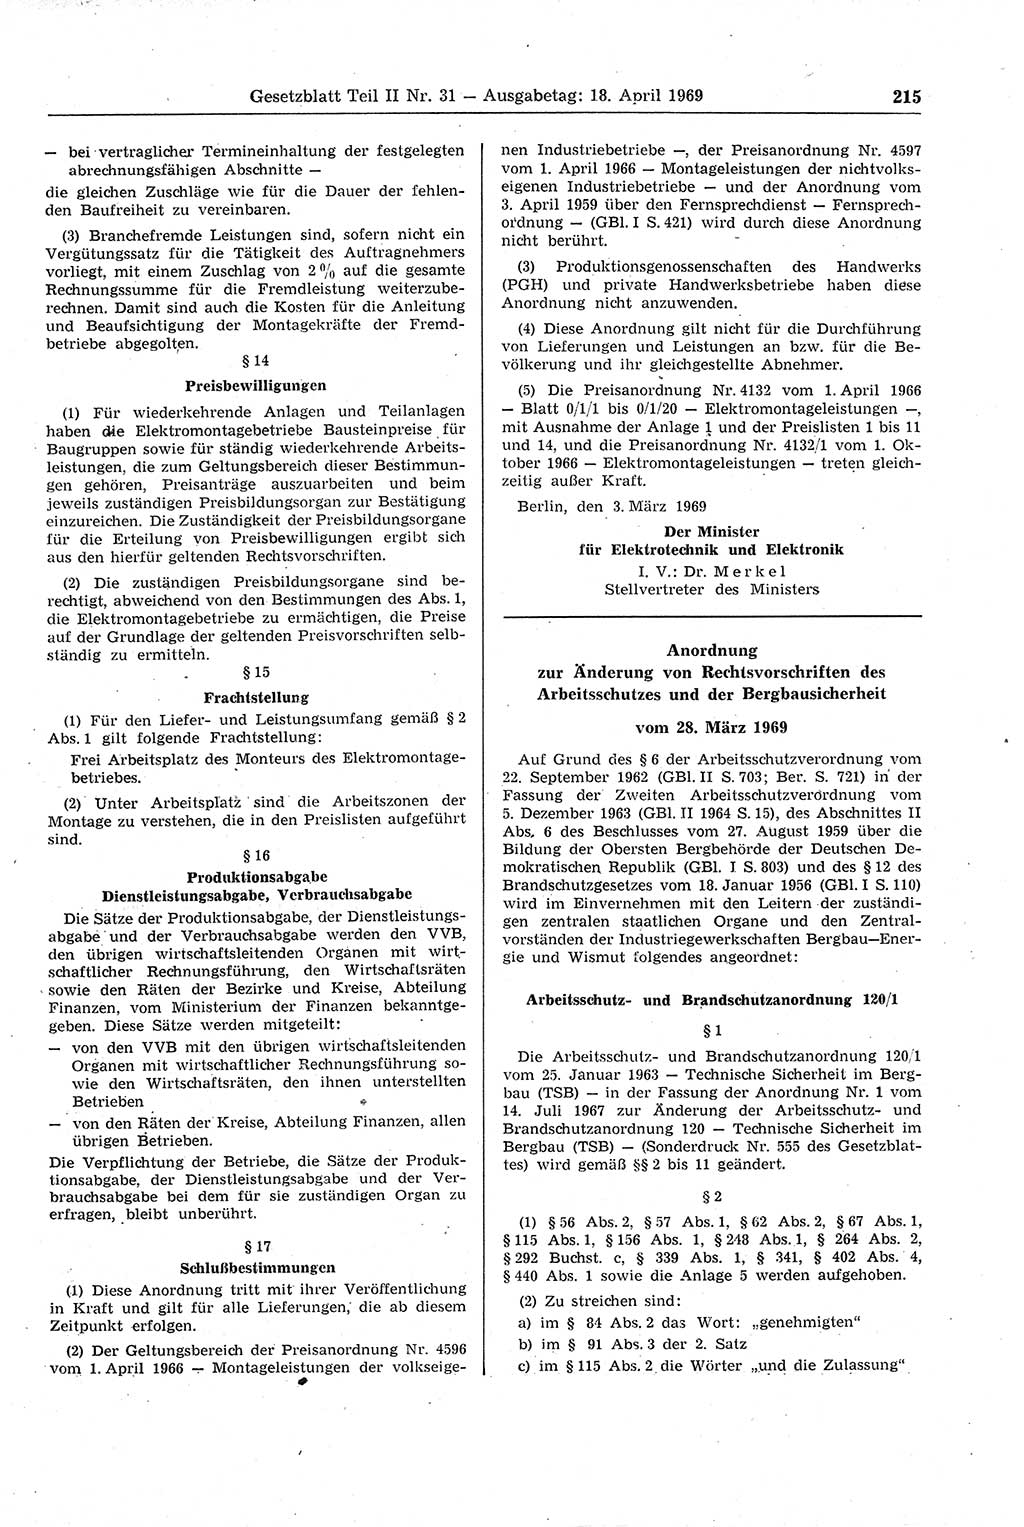 Gesetzblatt (GBl.) der Deutschen Demokratischen Republik (DDR) Teil ⅠⅠ 1969, Seite 215 (GBl. DDR ⅠⅠ 1969, S. 215)